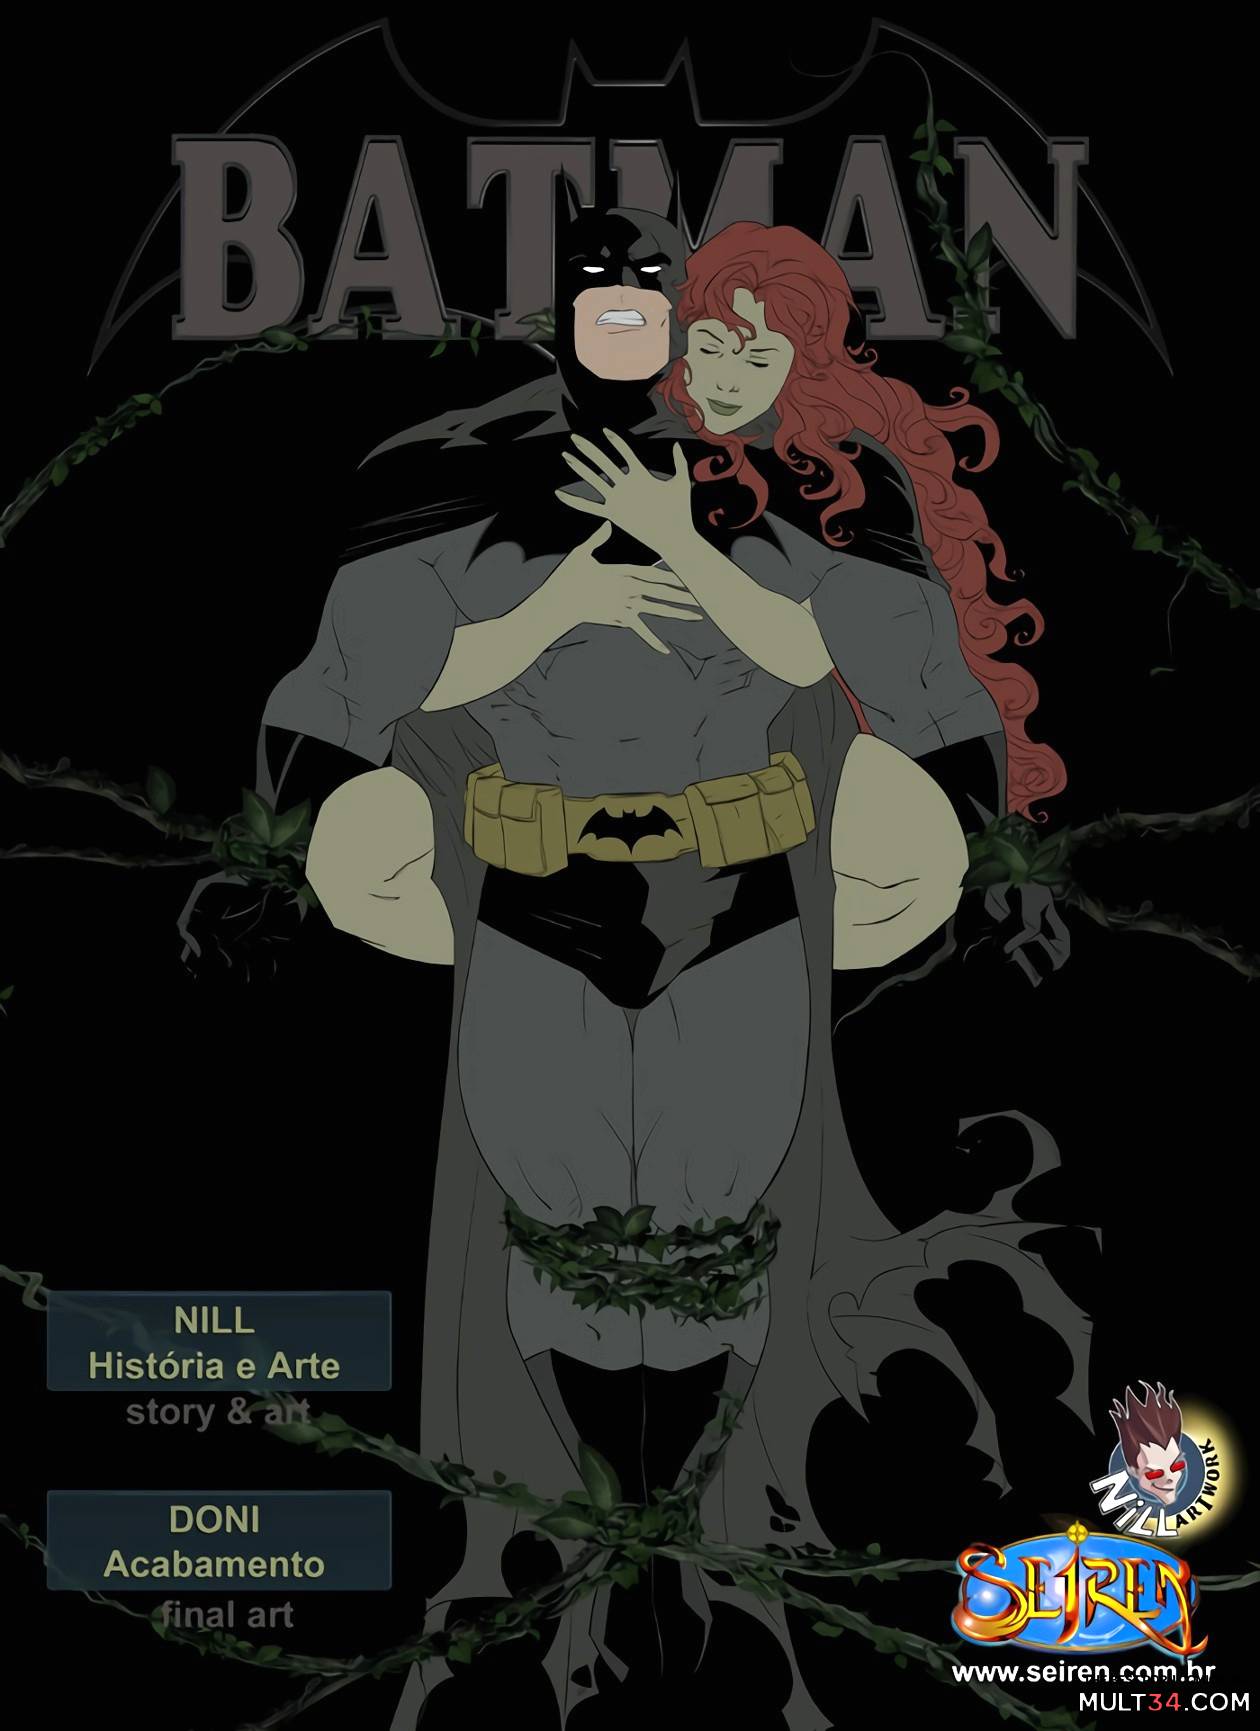 Batman And Catwoman Porn Comic Blowjob - Batman by Seiren porn comic - the best cartoon porn comics, Rule 34 | MULT34